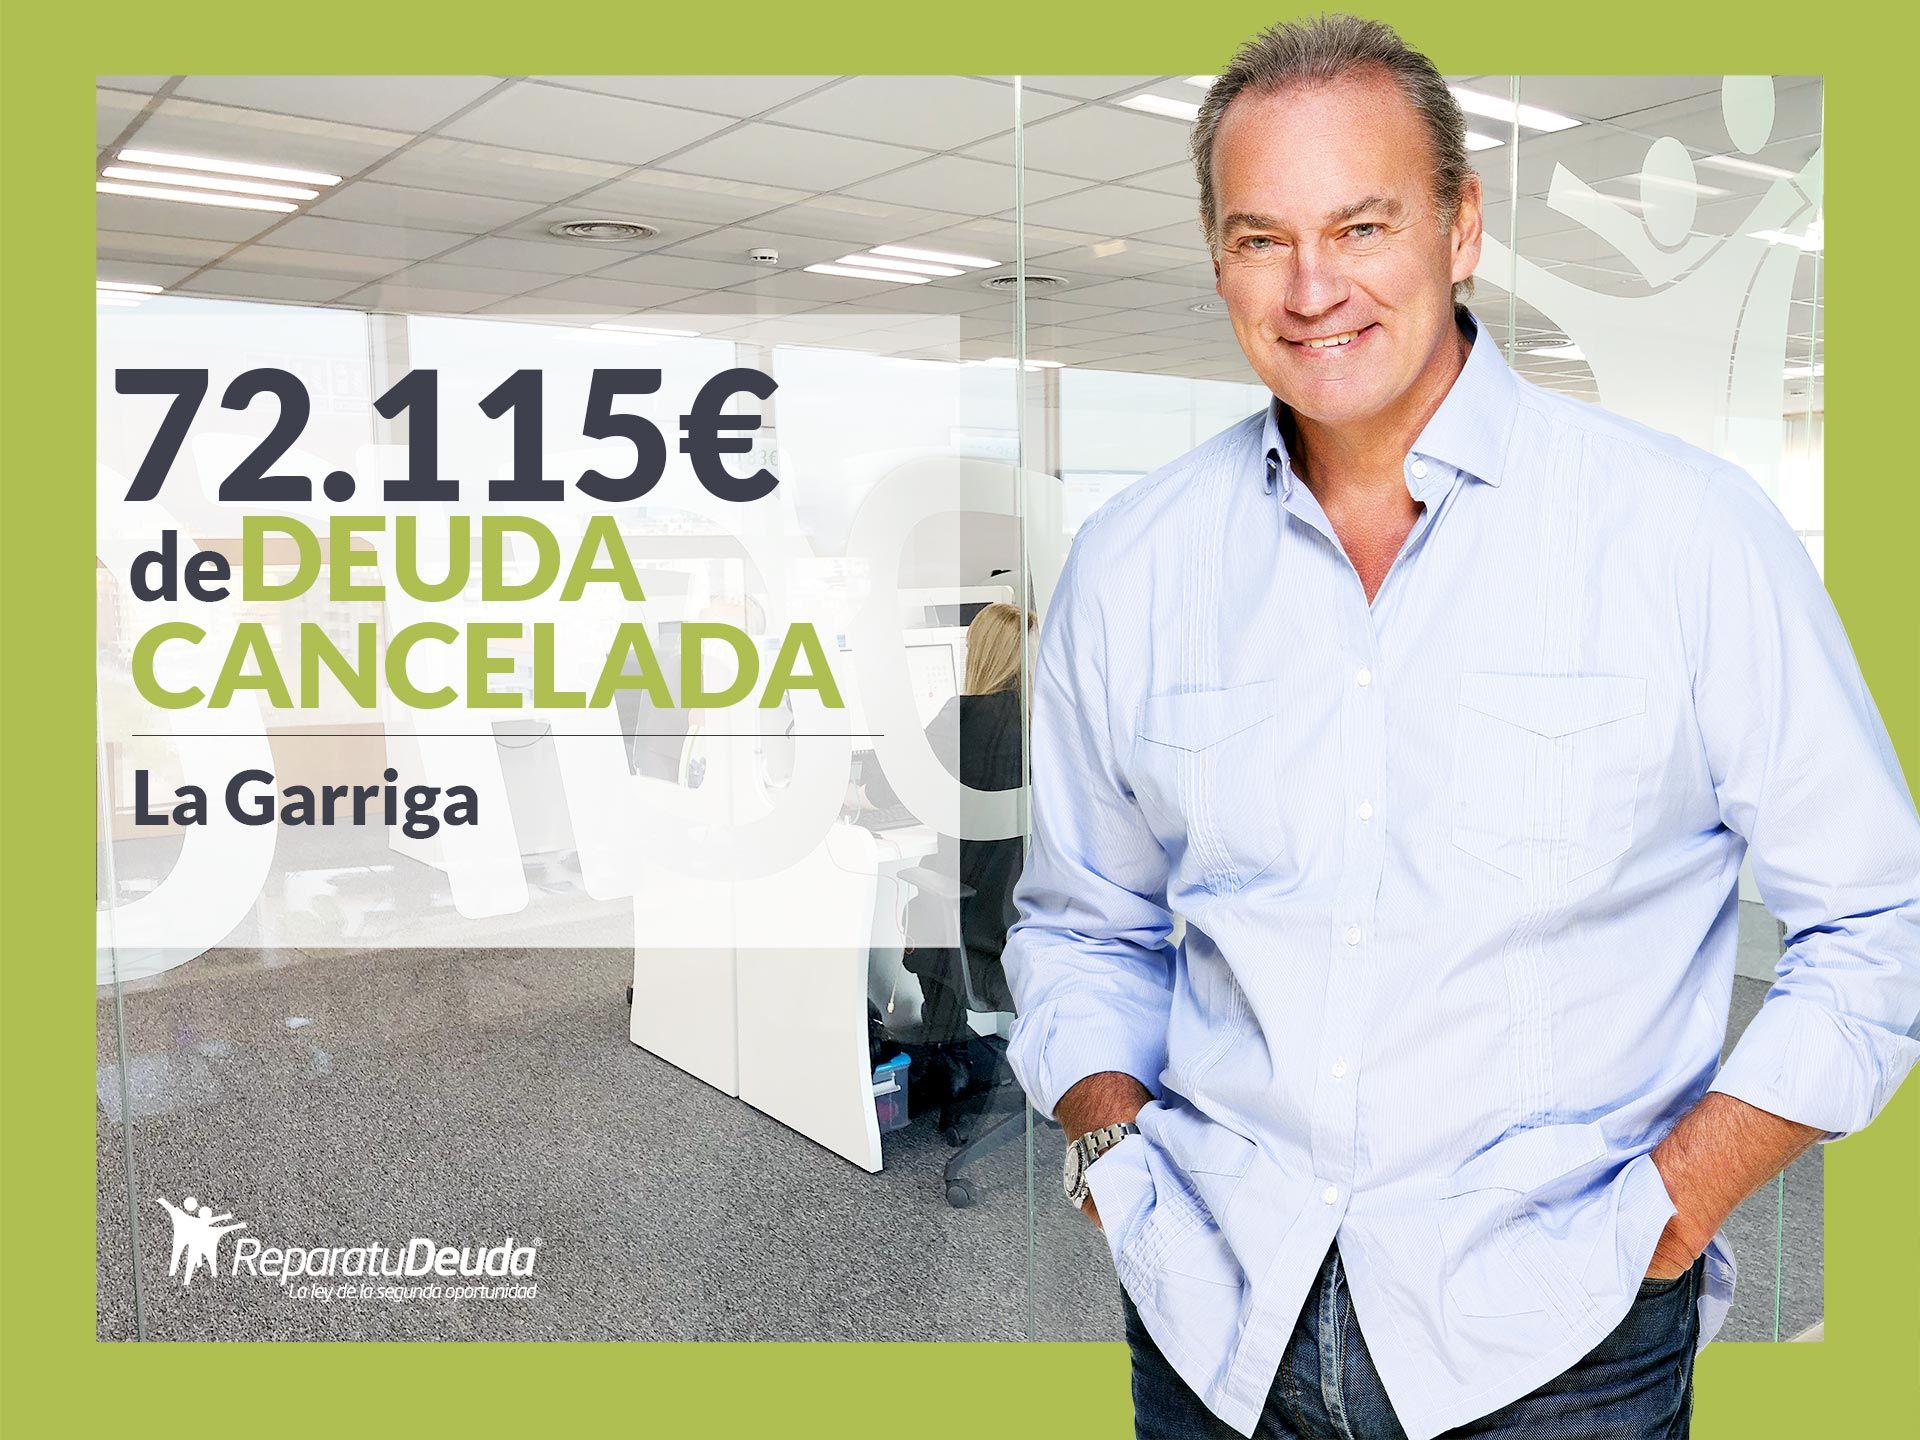 Repara tu Deuda Abogados cancela 72.115? en La Garriga (Barcelona) con la Ley de Segunda Oportunidad